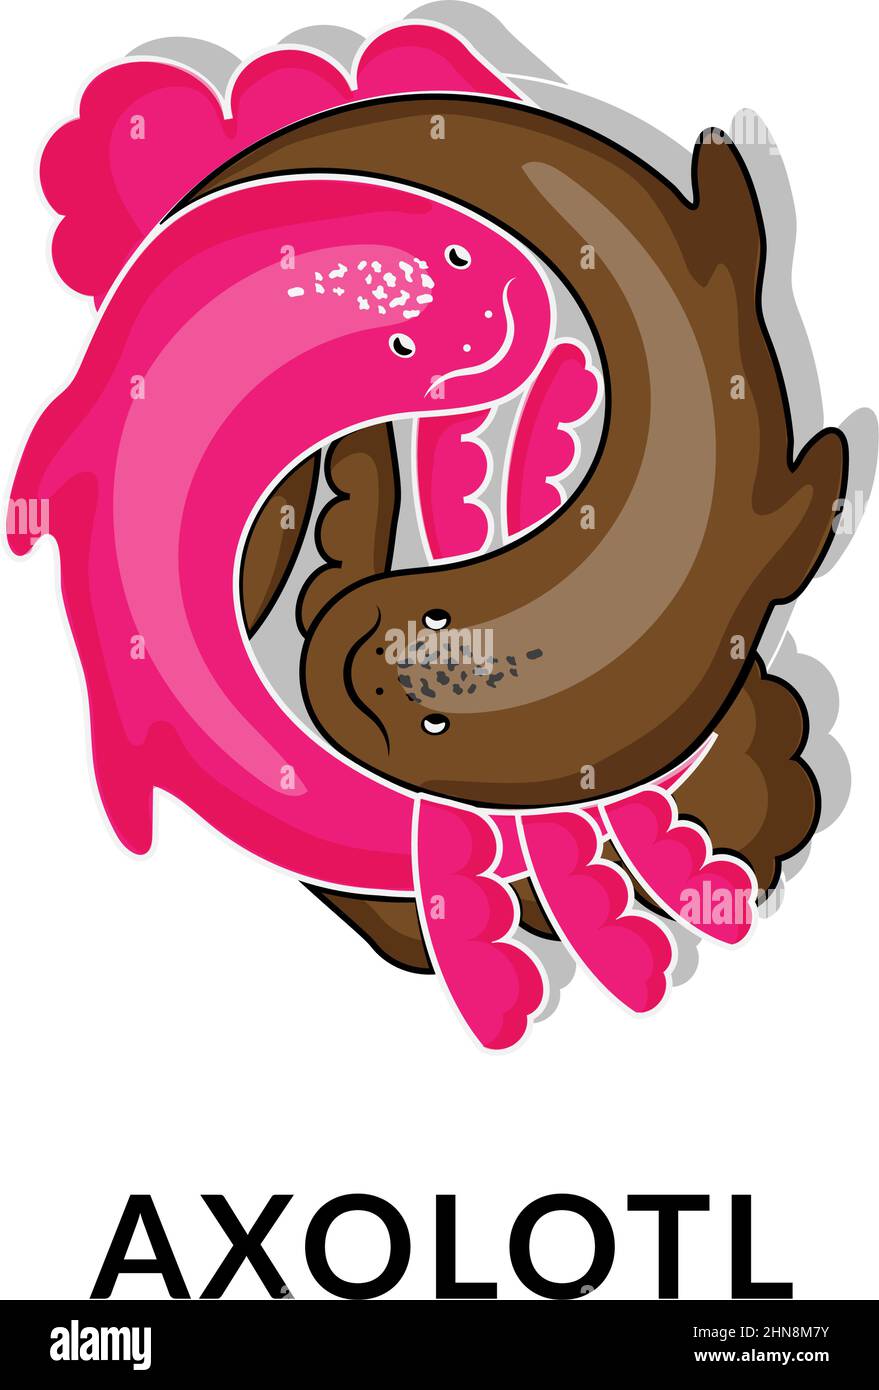 Joli axolotl, illustration vectorielle de style dessin animé. Icône animal. Yin et Yang. Axolotl rose et chocolat. Logo dans un style linéaire tendance. Illustration de Vecteur